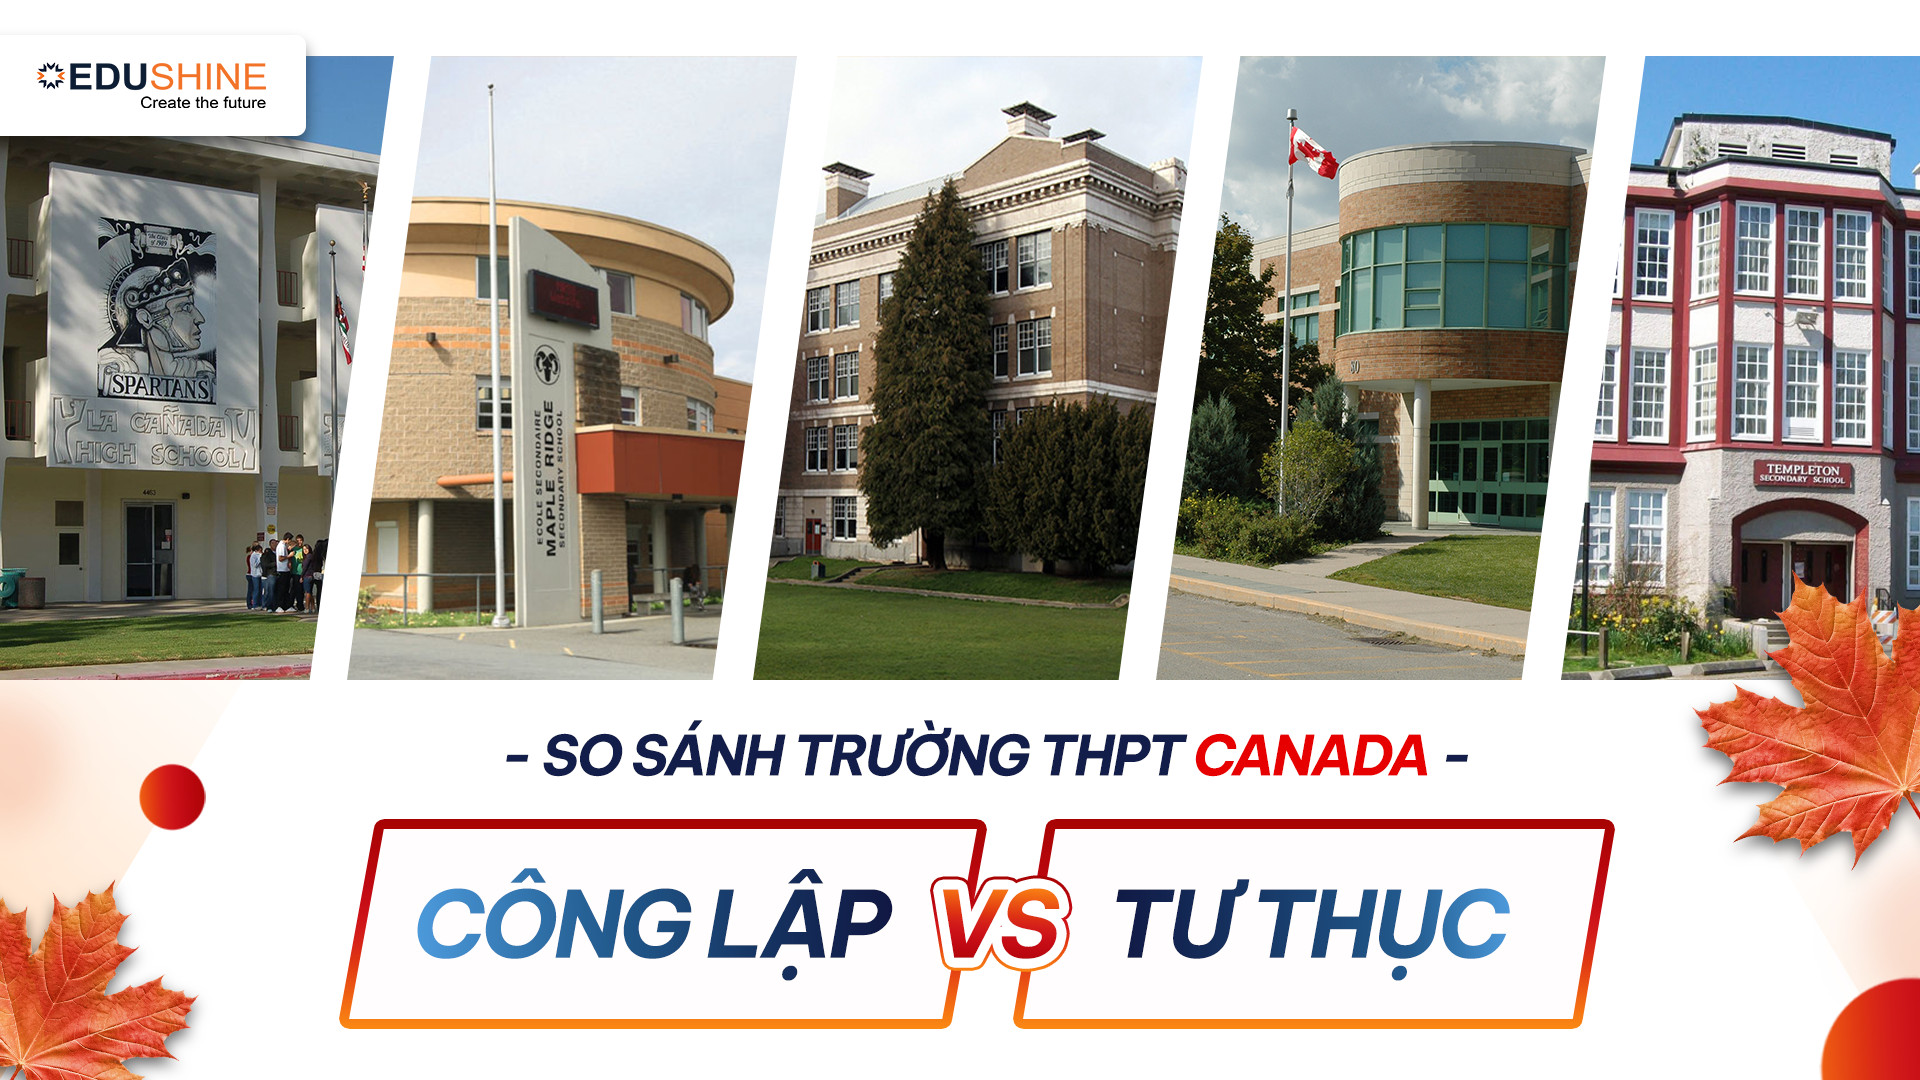 So sánh trường THPT Canada Công lập vs Tư thục